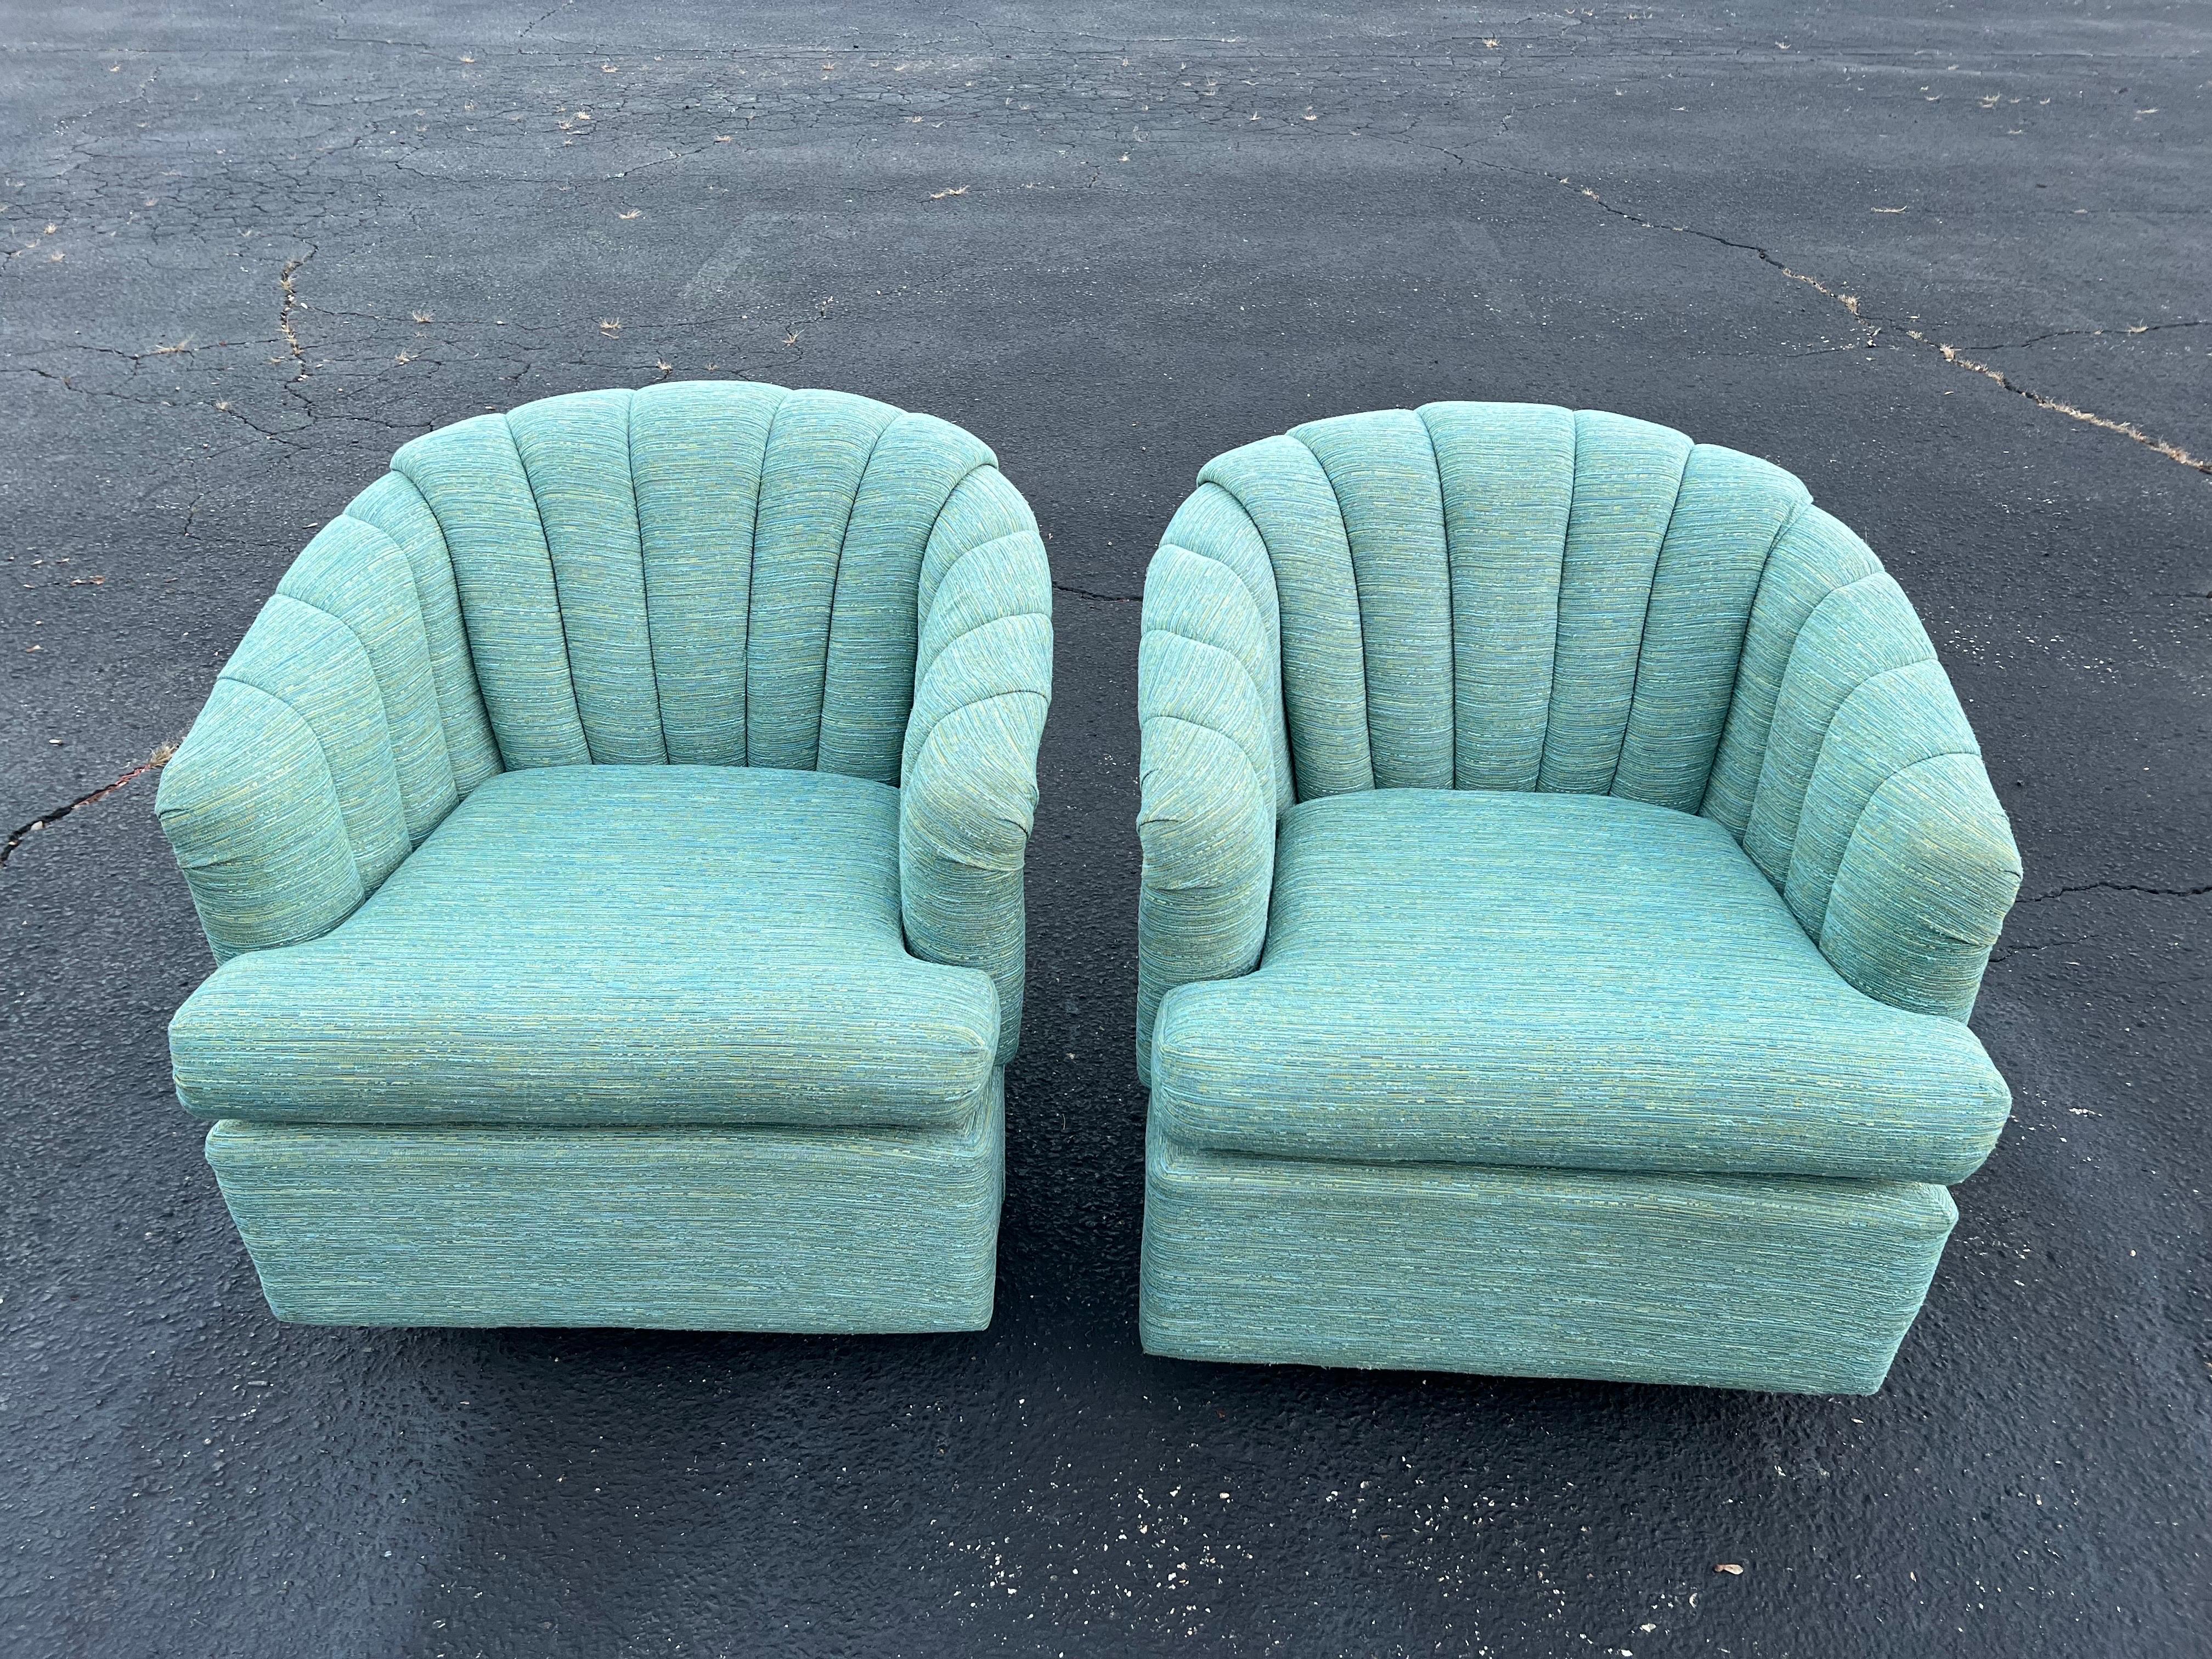 Paire de chaises pivotantes à dossier cannelé turquoise. Ces chaises pivotent et se balancent et sont dotées d'une base pivotante ronde en métal. La tapisserie d'ameublement a un aspect tissé multicolore avec un fond crème. Ces chaises sont